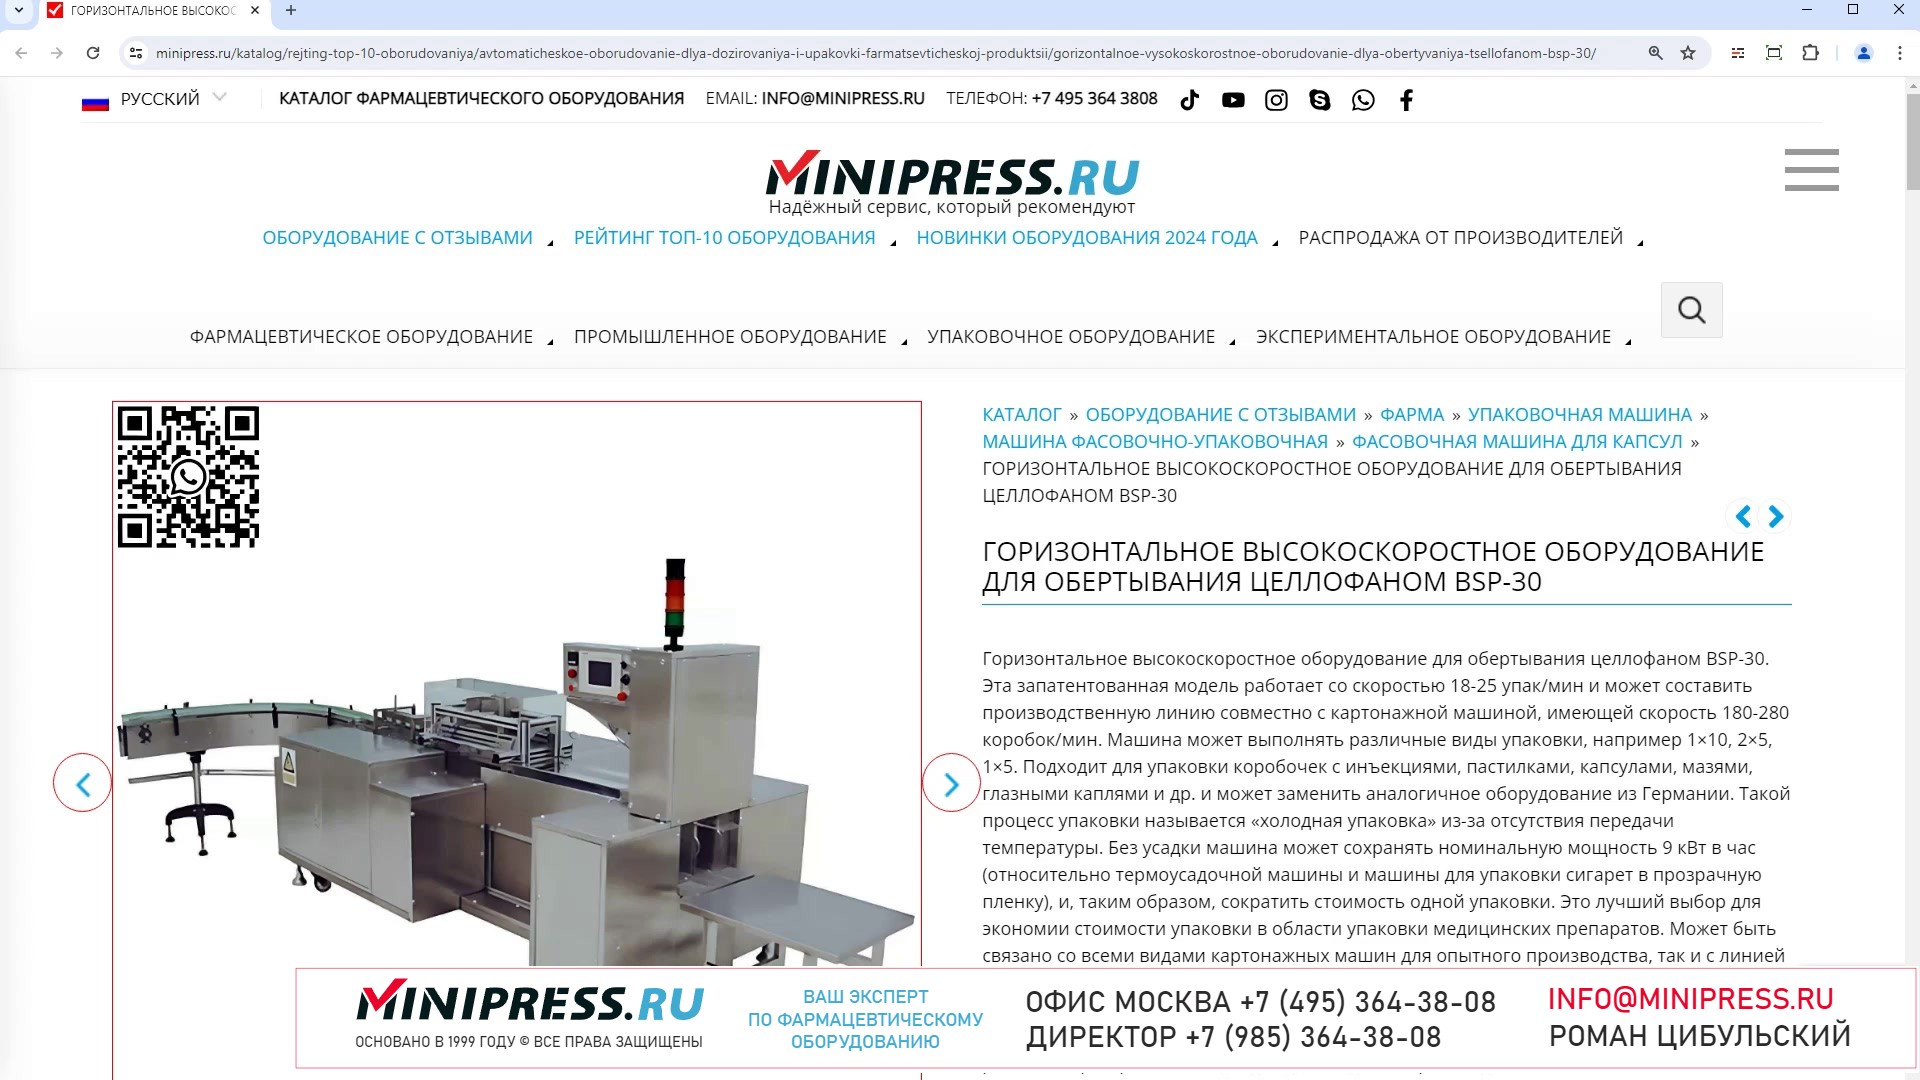 Minipress.ru Горизонтальное высокоскоростное оборудование для обертывания целлофаном BSP-30